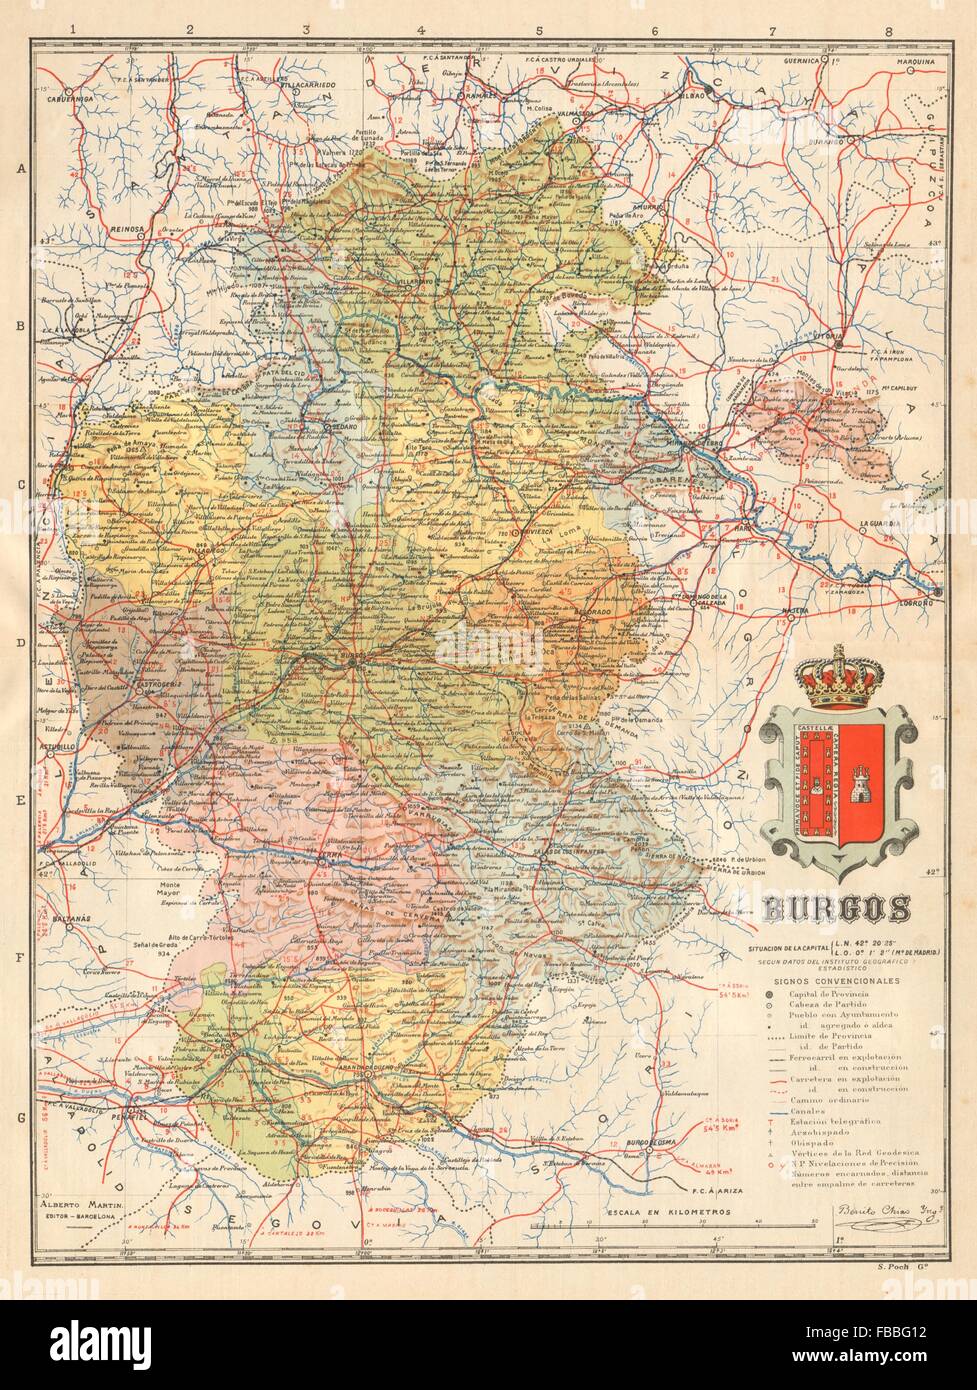 BURGOS. Castilla y León. Mapa antiguo de la provincia. ALBERTO MARTIN, c1911 Stock Photo